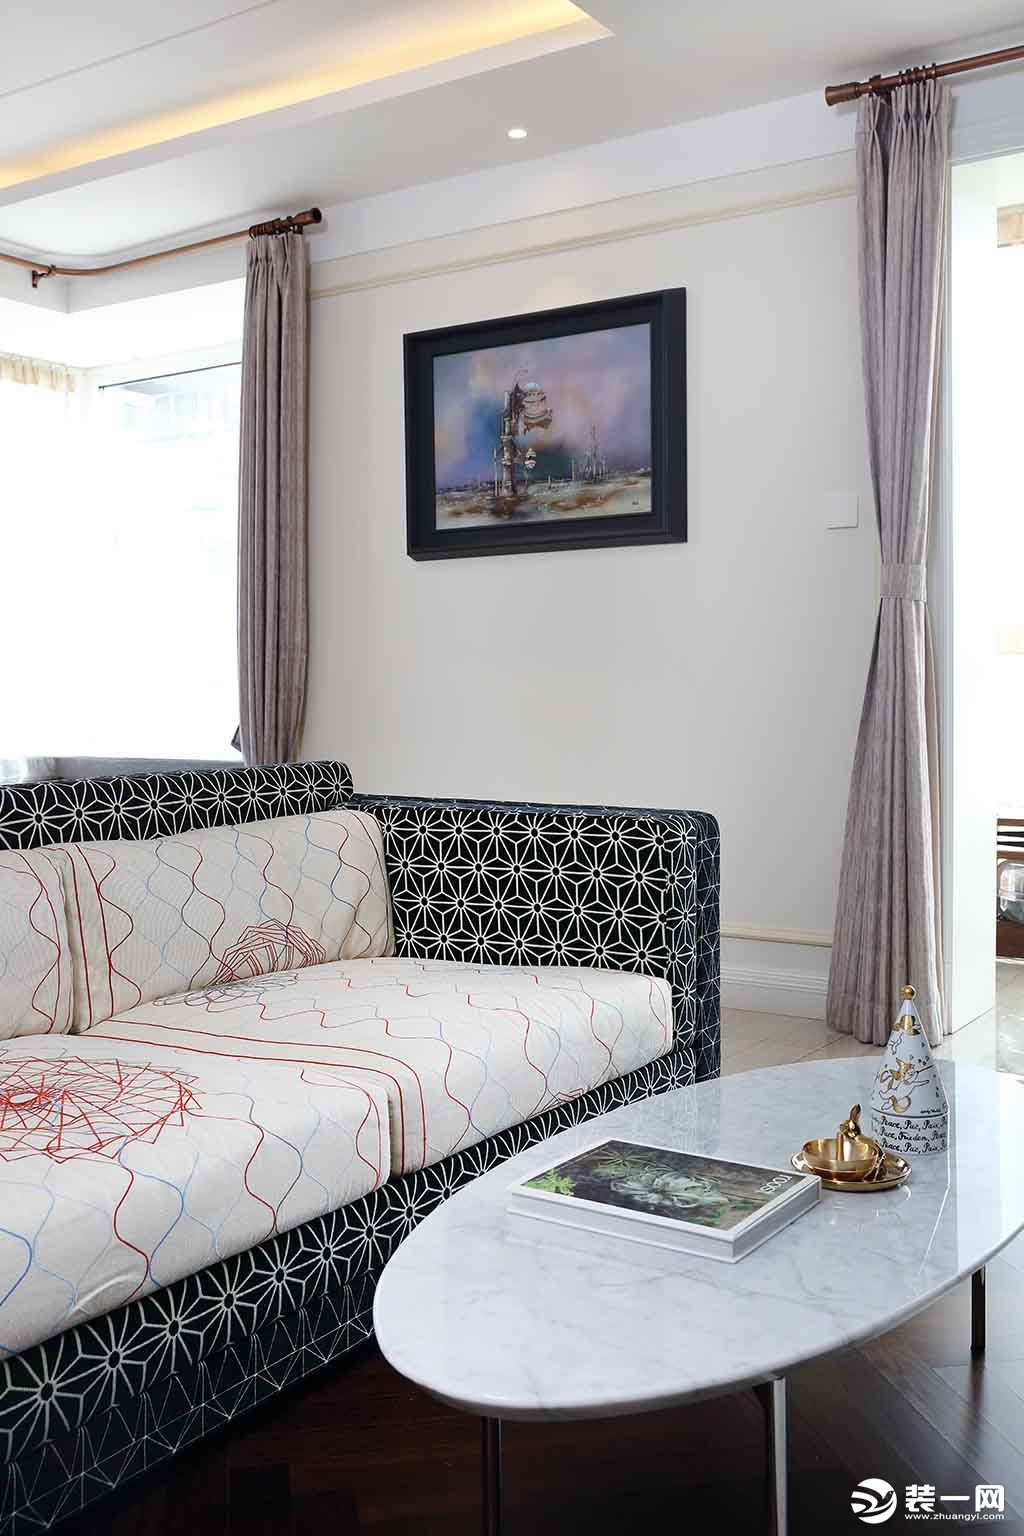 自然浪漫的卧室空间，床品的配色选择宜清新雅致，与淡雅宁静的背景色打造舒适柔和的视感